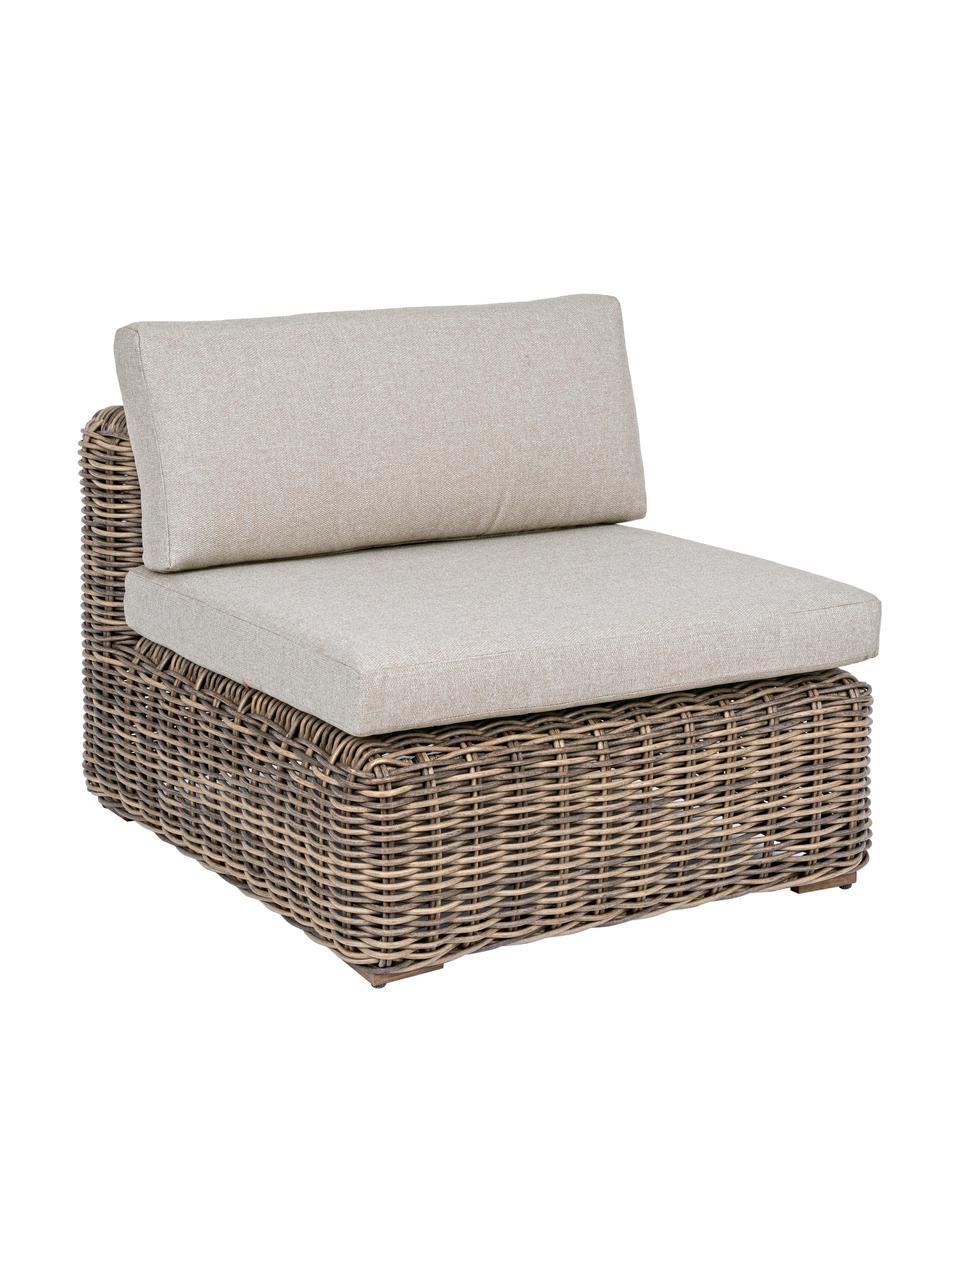 Ogrodowy fotel wypoczynkowy z poduszkami Coraline, Tapicerka: 100% polipropylen, Stelaż: aluminium malowane proszk, Odcienie brązowego, beżowy, S 83 x G 98 cm